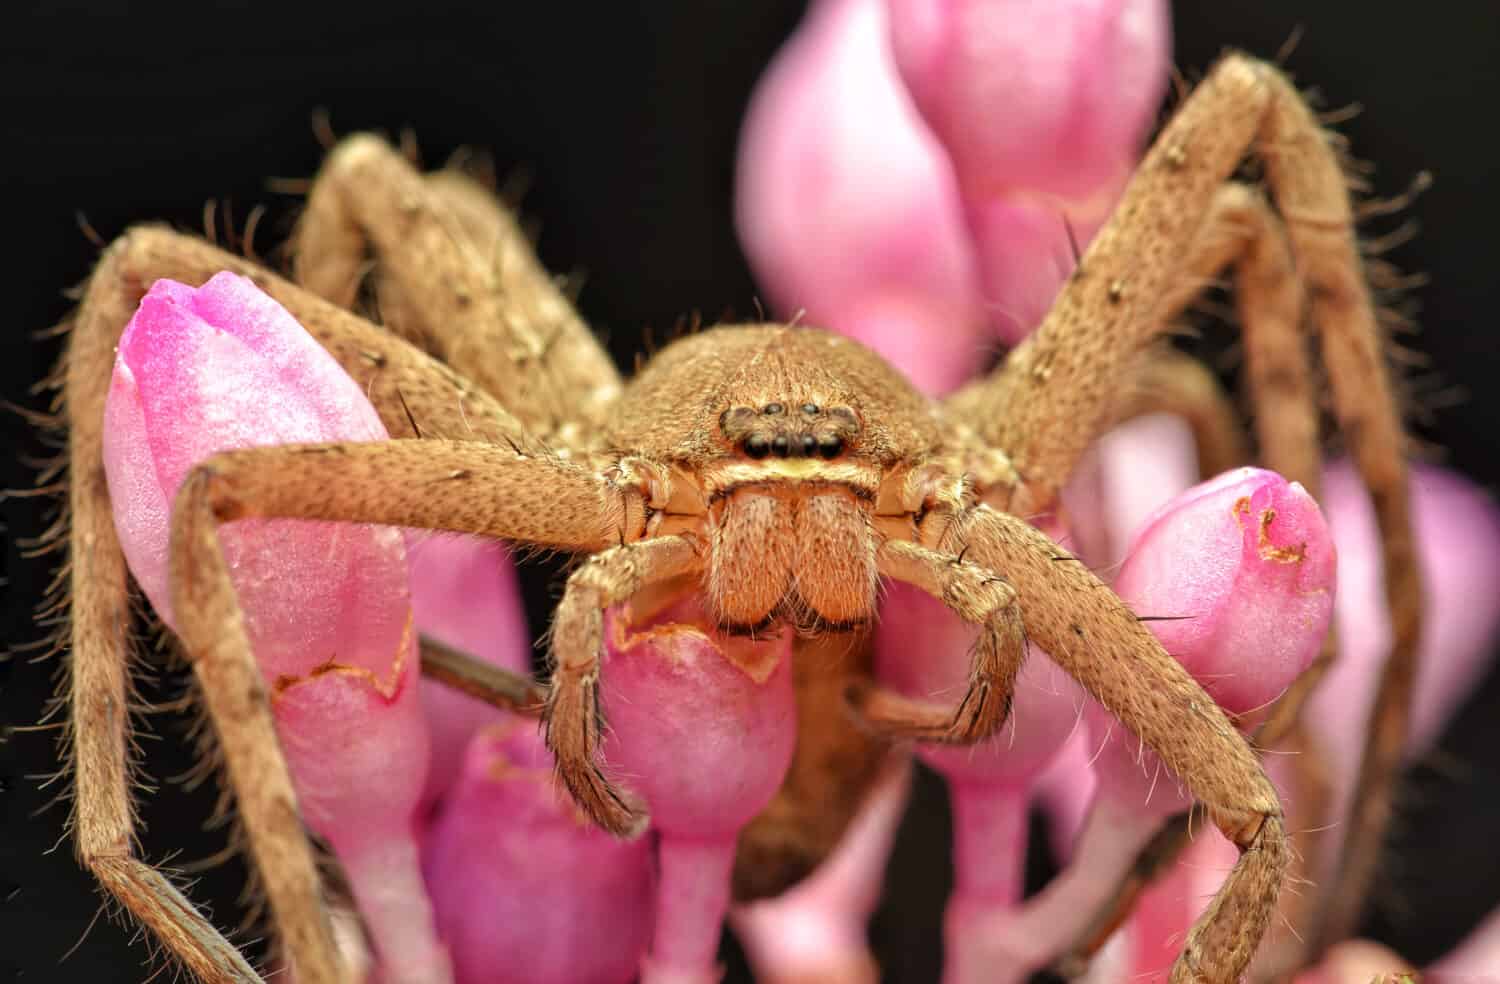 Portrait of Heteropoda venatoria huntsman spider